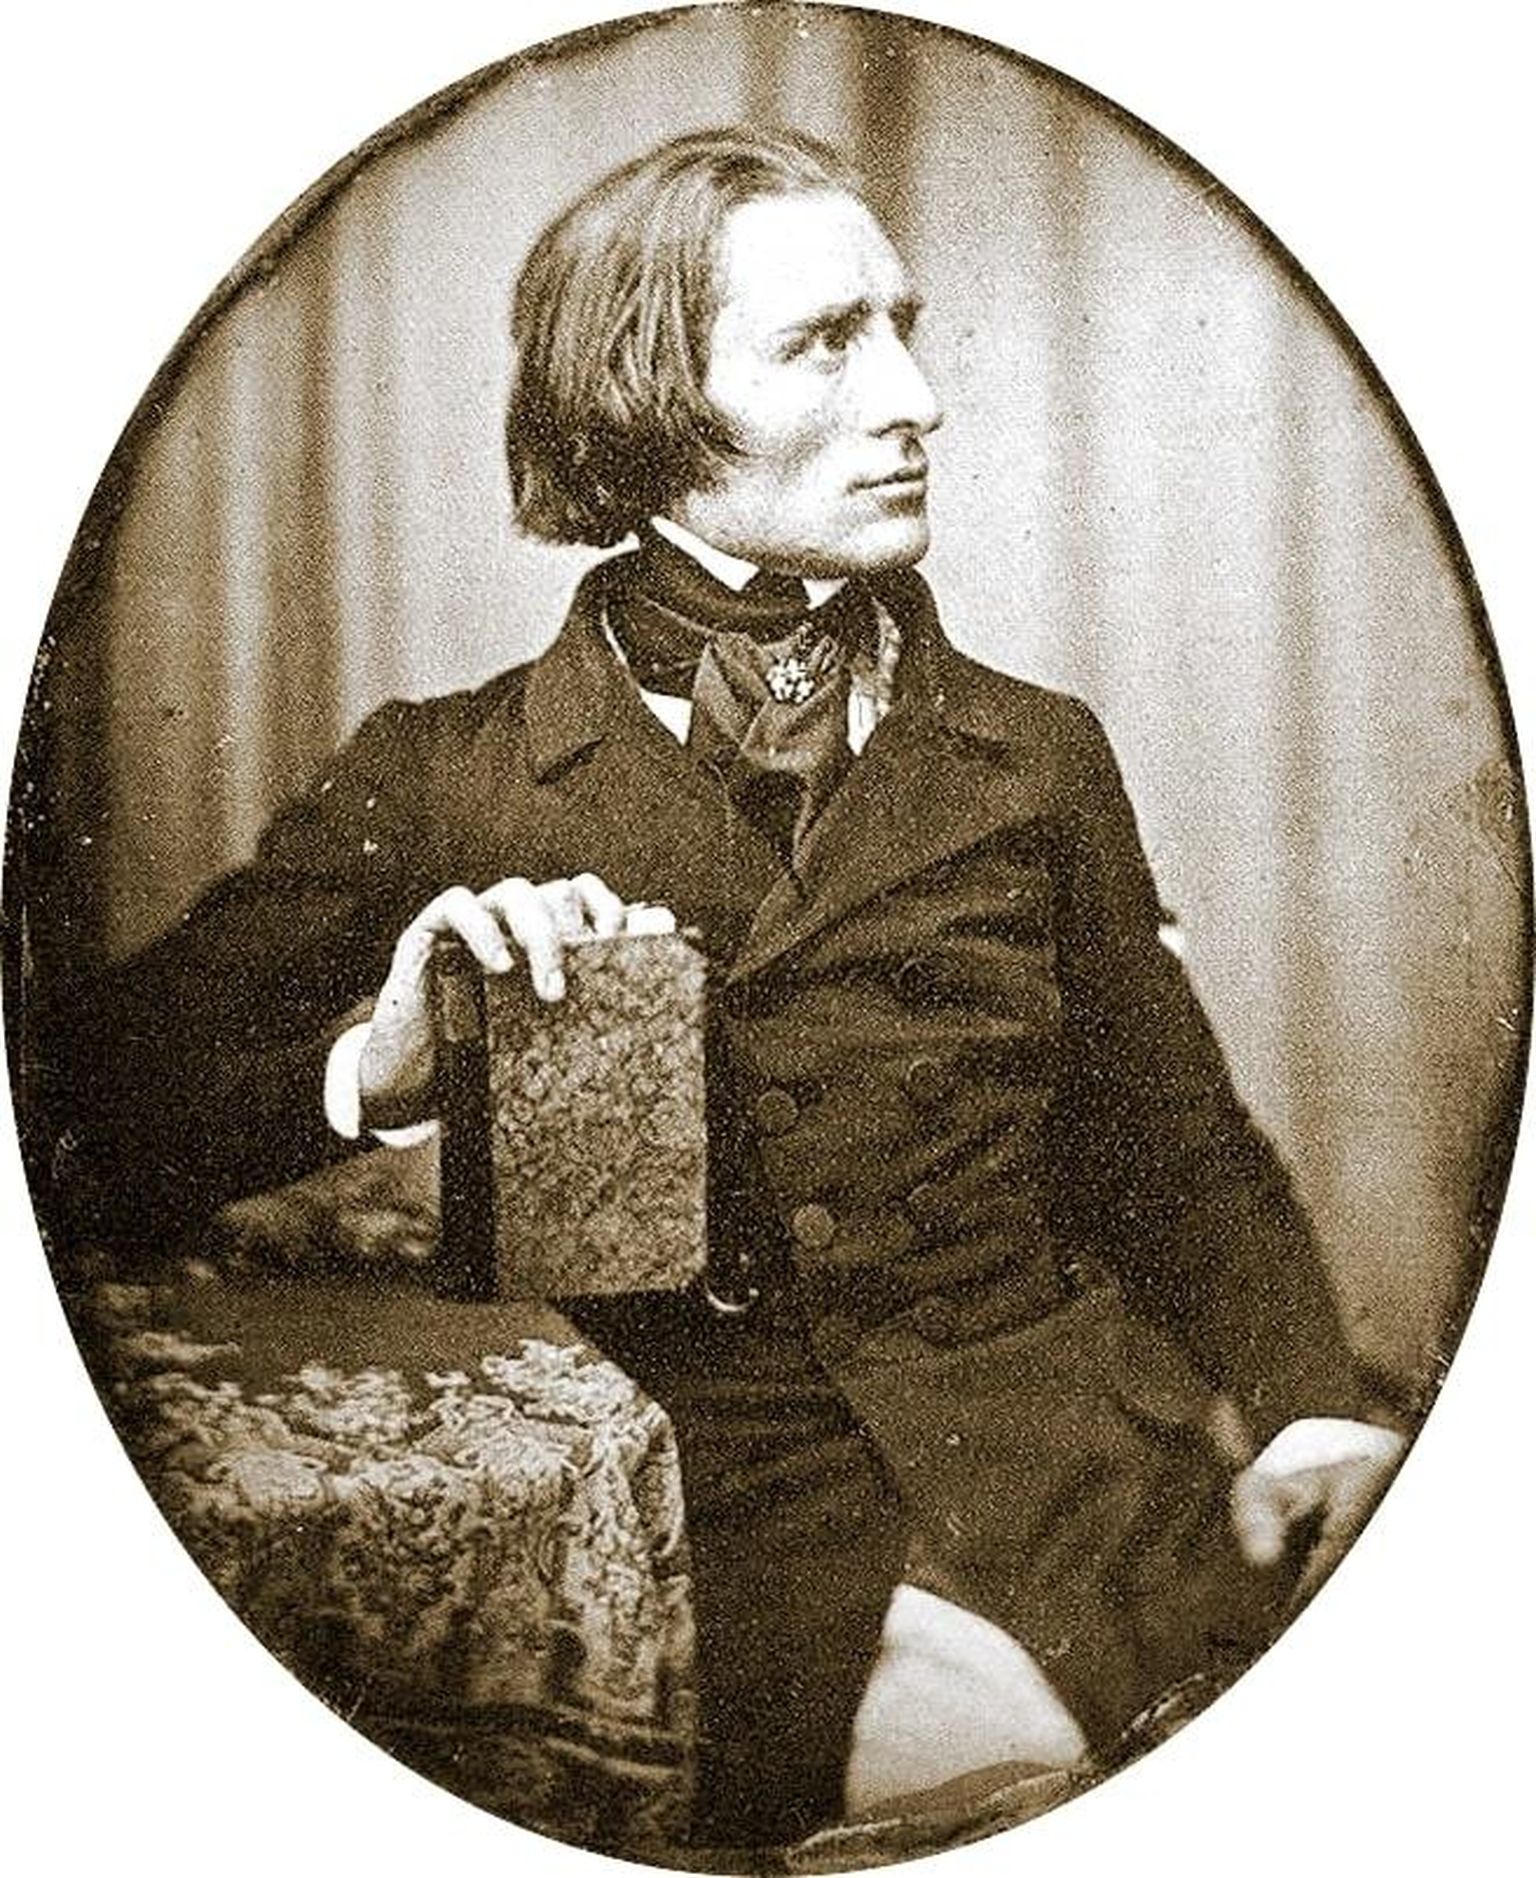 Ferenc Liszt dagerrotüübil, mille on teinud Hermann Biow aastal 1843.